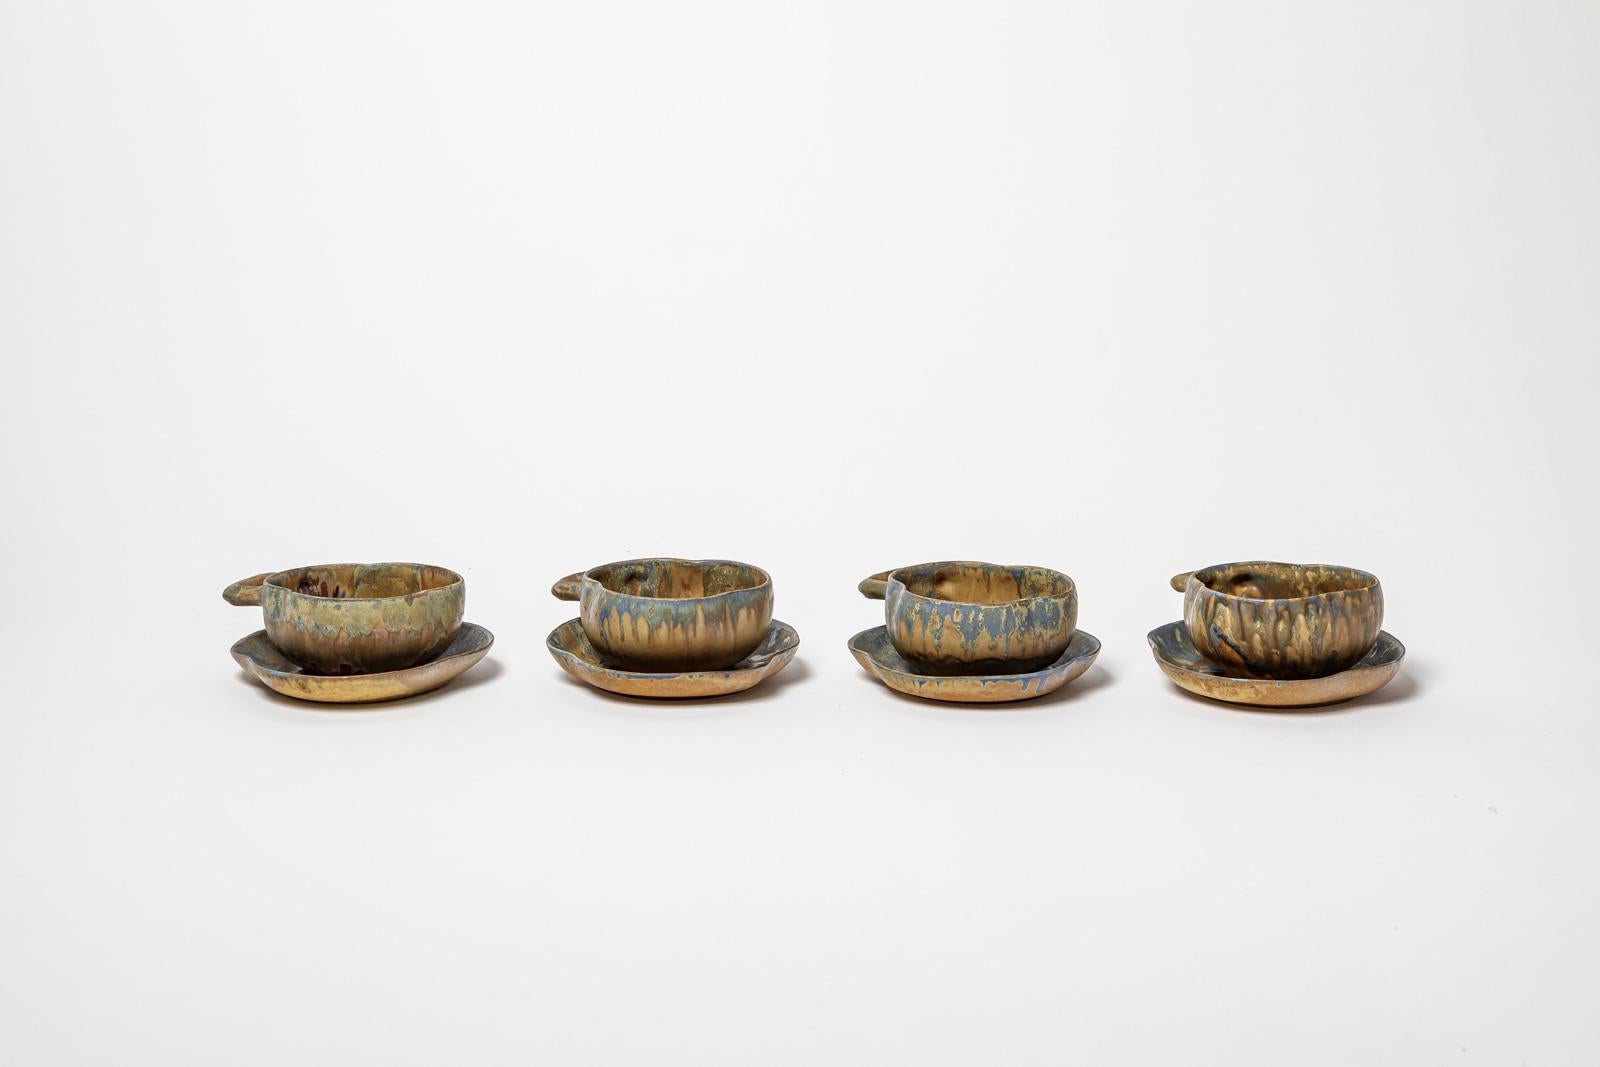 Gilbert Metenier

Jugendstil Keramik Set von 4 Kaffee oder Tee Tasse oder Schale

Original guter Zustand

Unterzeichnet

Höhe 6 cm
Groß 12 cm